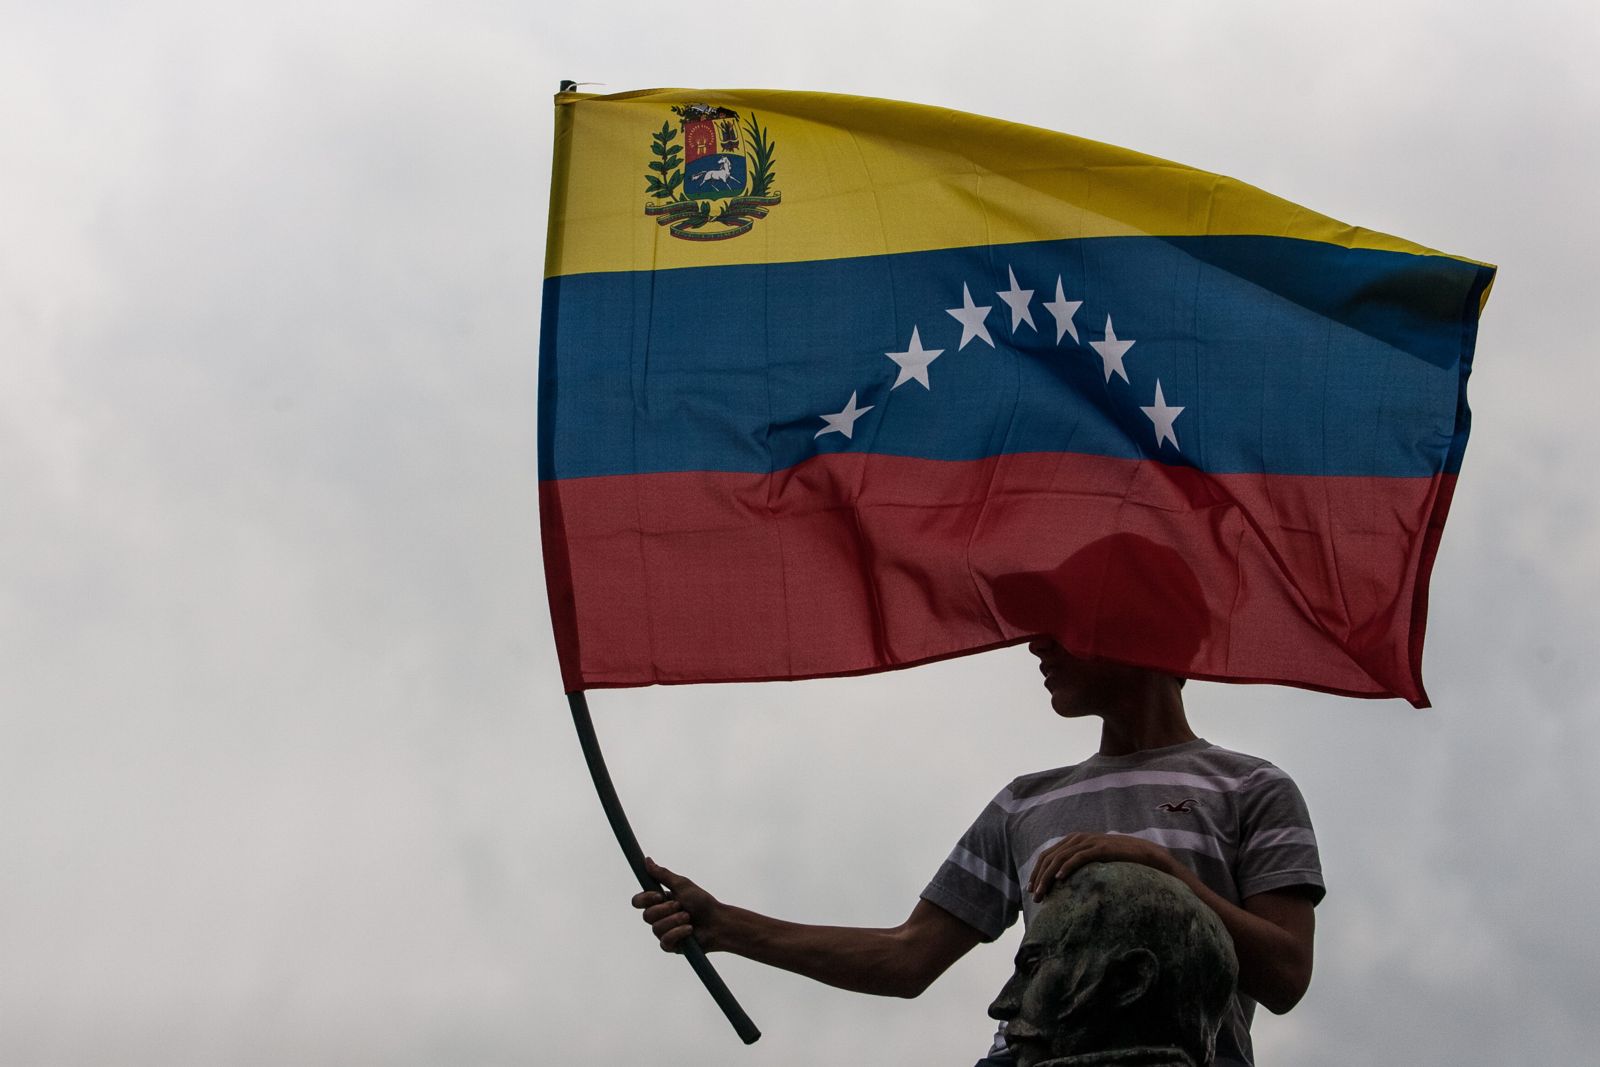 La resiliencia en contextos no democráticos: perspectivas desde Venezuela